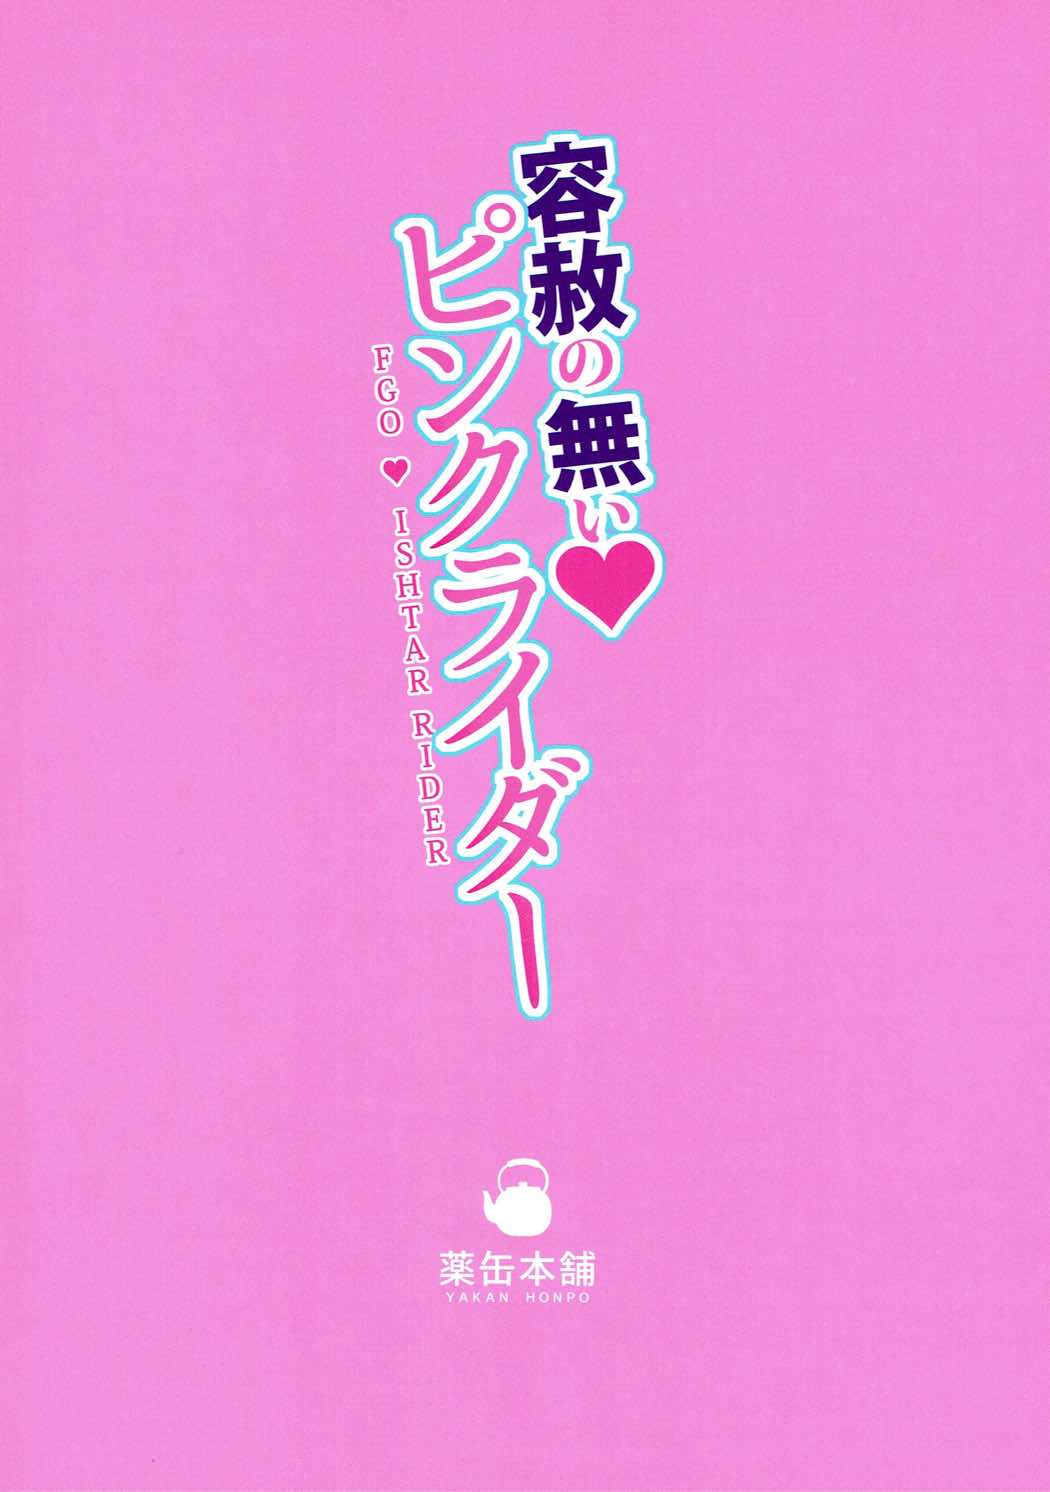 (C93) [Yakan Honpo (Inoue Tommy)] Yousha no Nai Pink Rider - No Mercy Pink Rider (Fate/Grand Order) (C93) [薬缶本舗 (いのうえとみい)] 容赦の無い♥ピンクライダー (Fate/Grand Order)